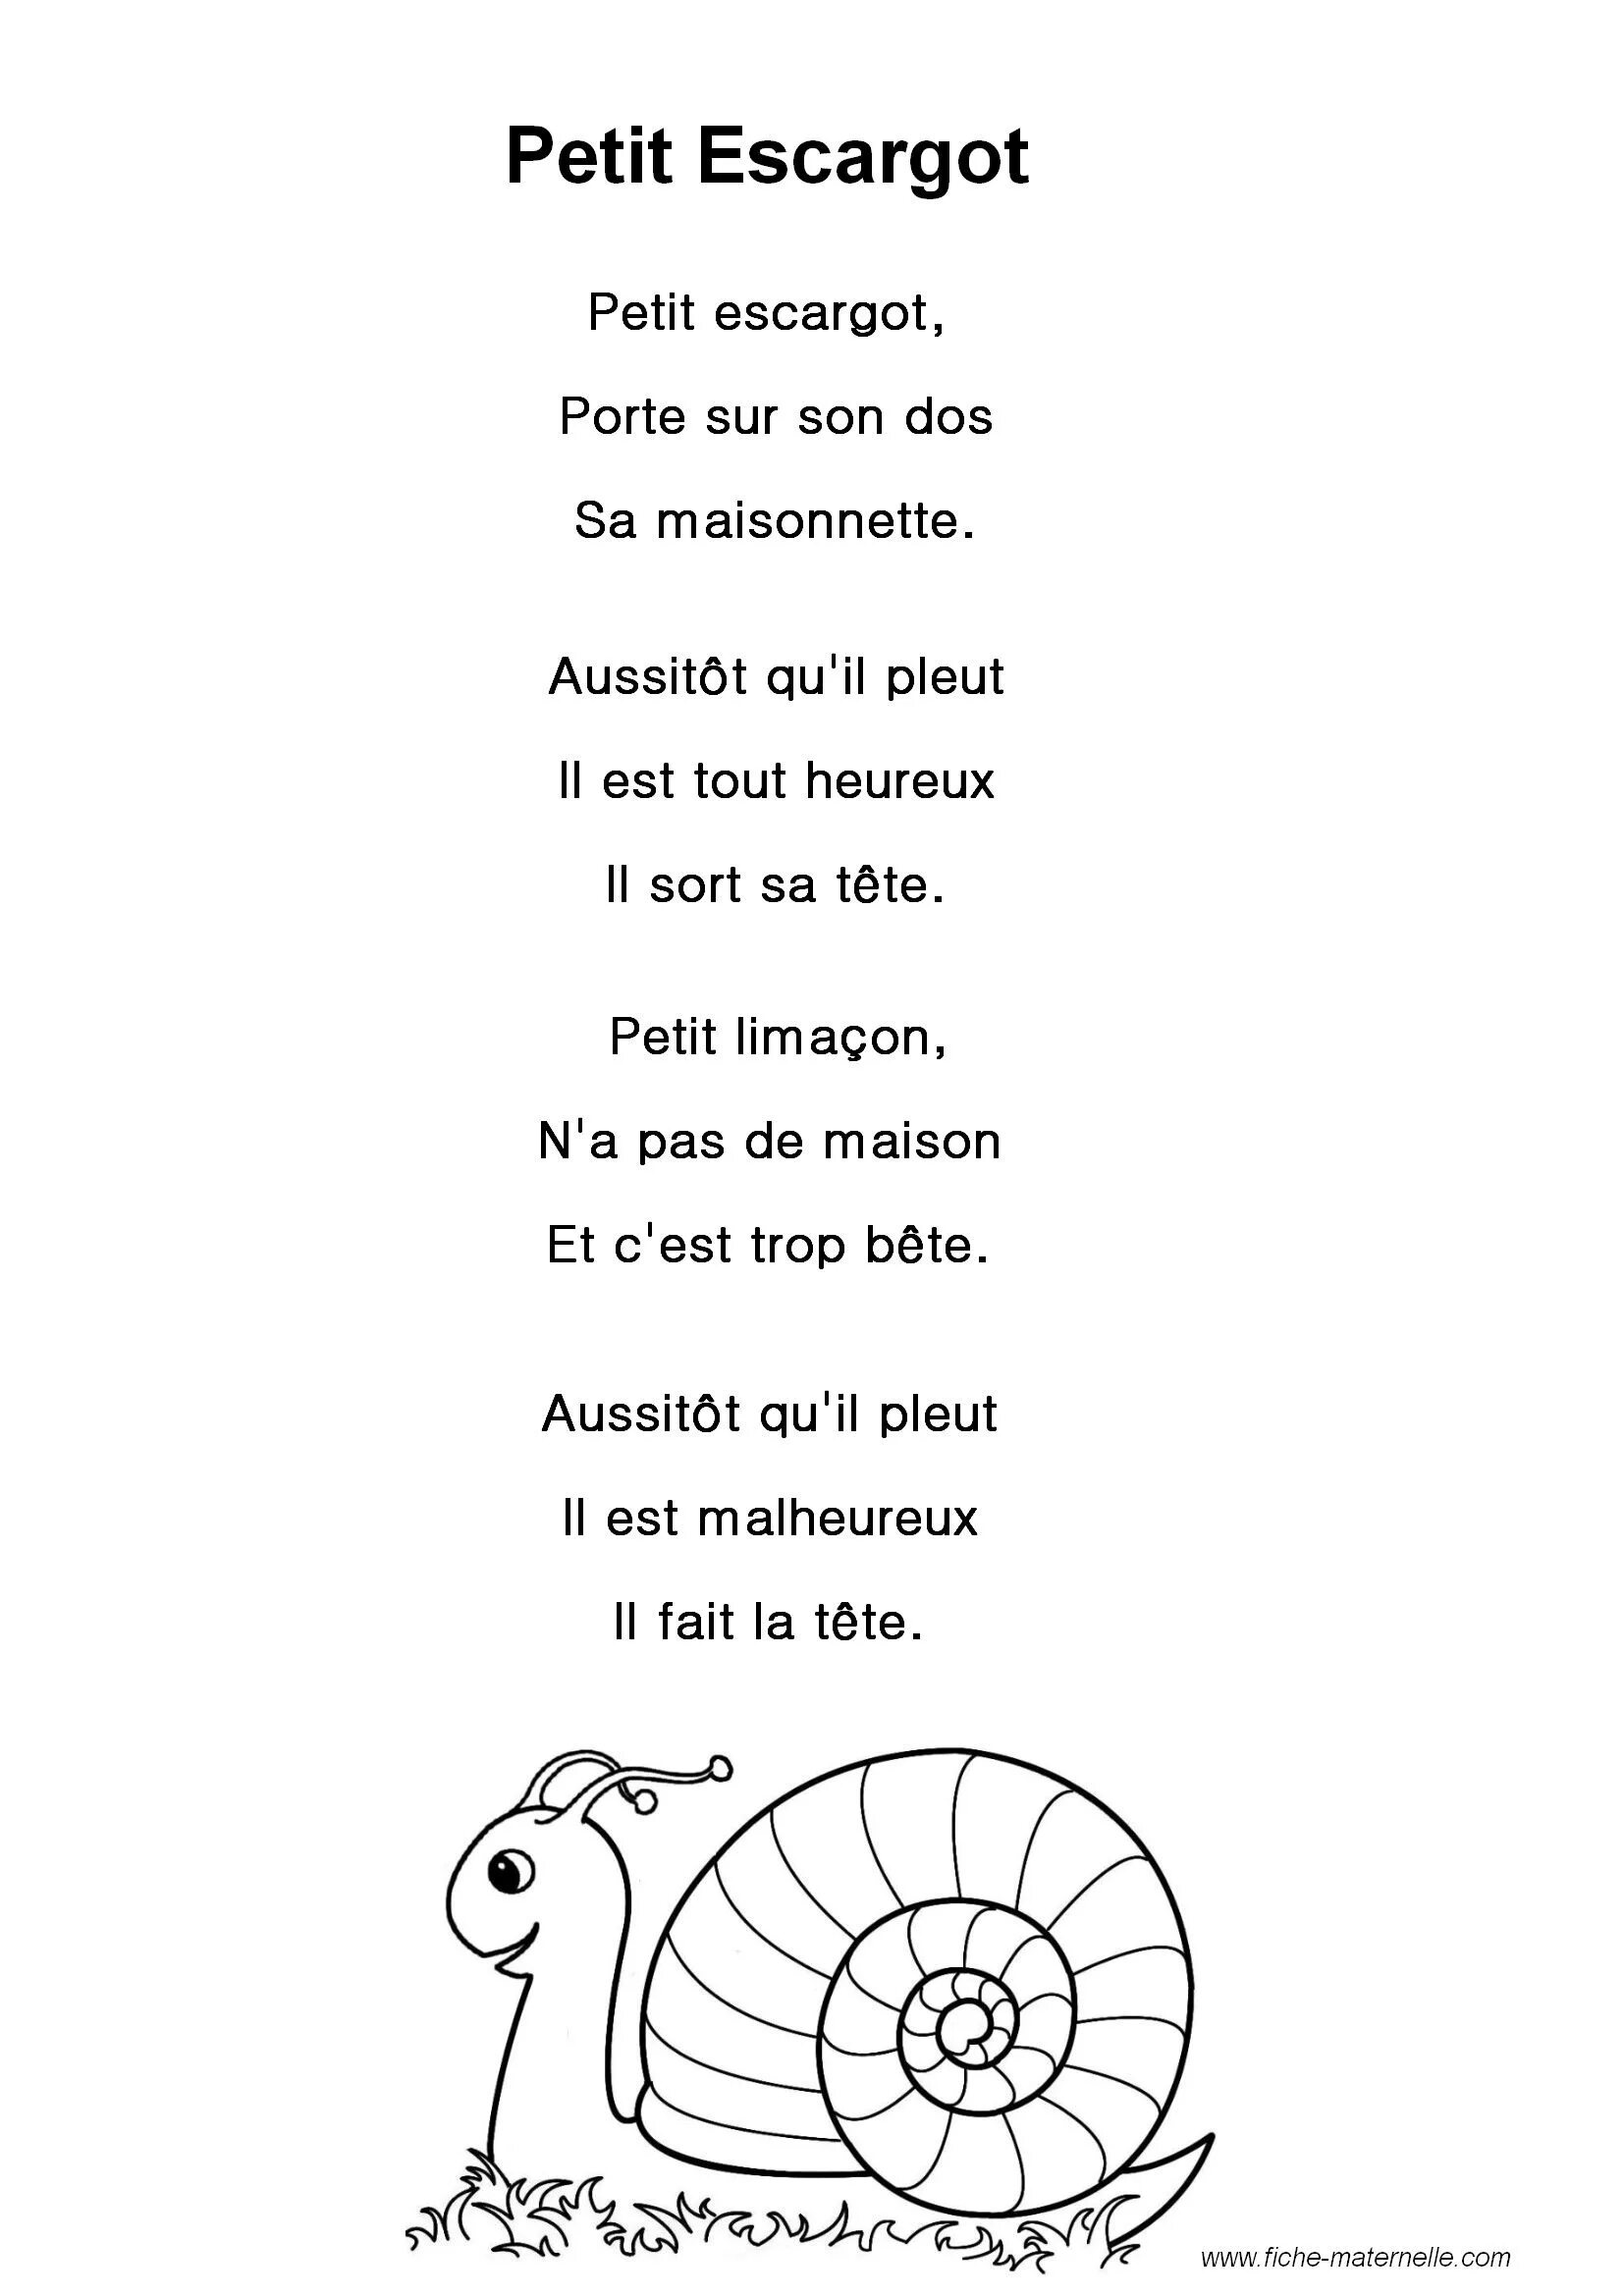 Французские детские песни. Французские песенки. Французские песенки для детей. Детские французские песенки. Детские песни на французском языке.